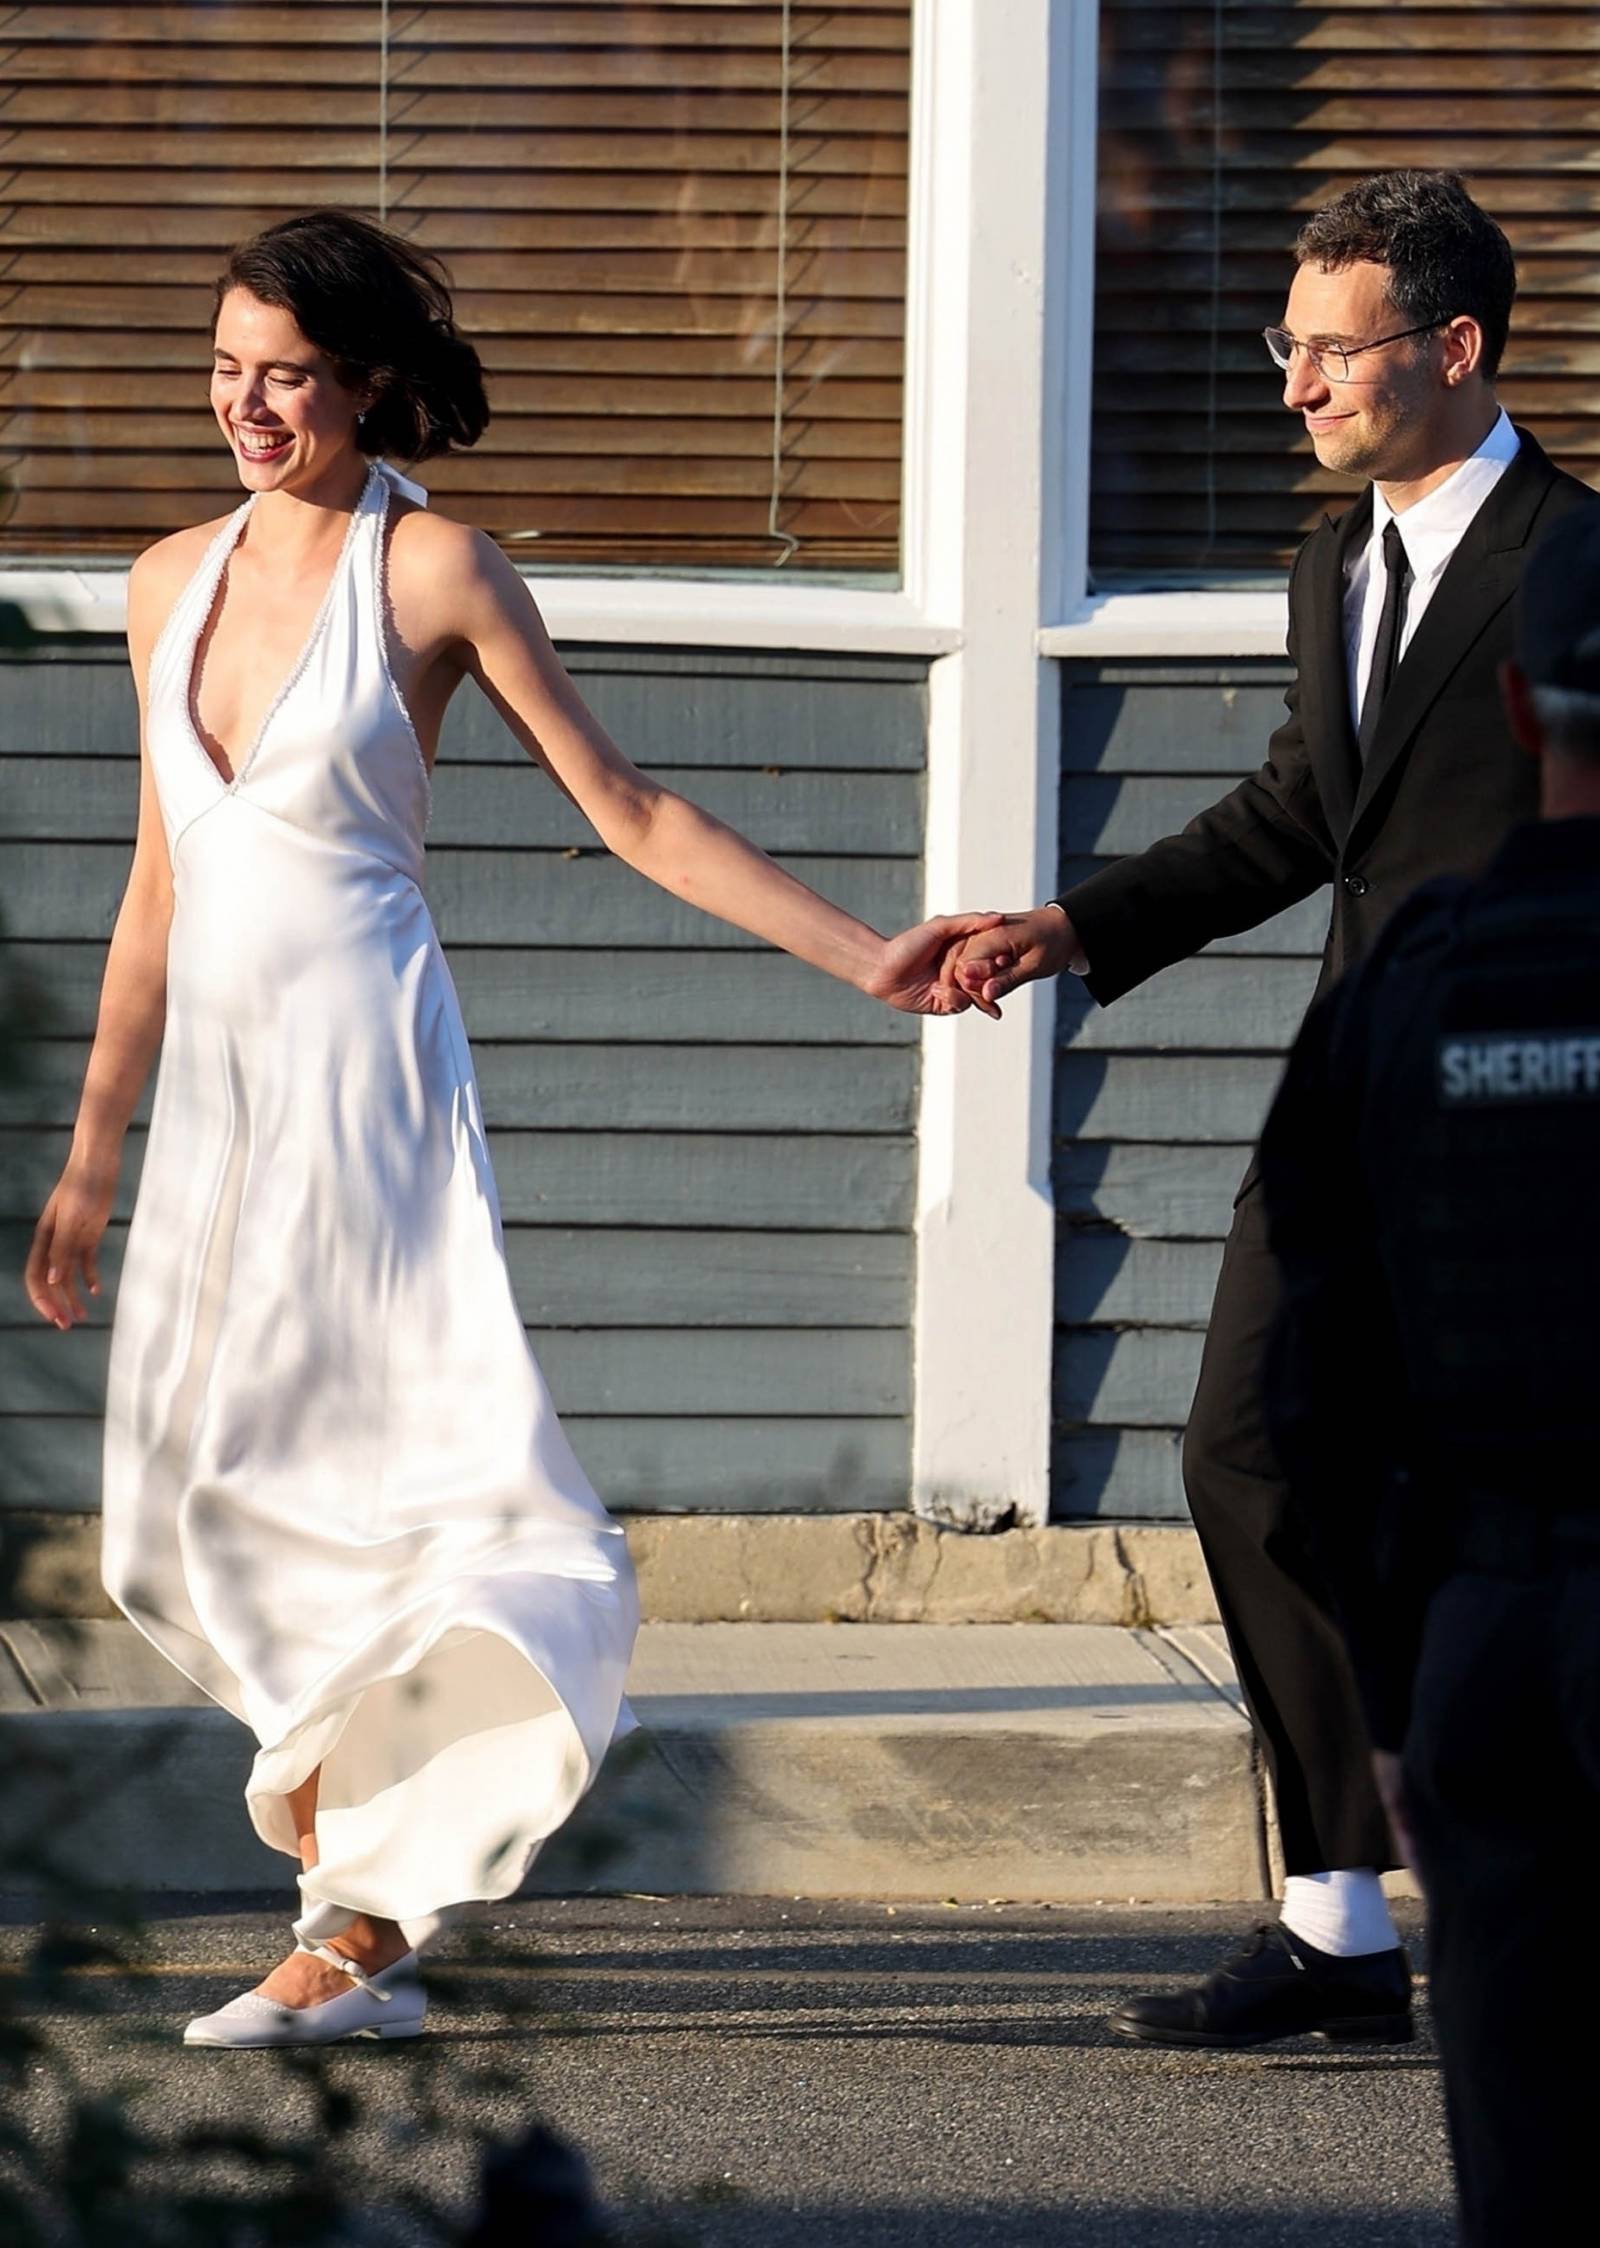 Aktorka Margaret Qualley i muzyk Jack Antonoff wzięli ślub. W sobotę 19 sierpnia 2023 roku Margaret Qualley i Jack Antonoff pobrali się podczas ceremonii ślubnej w kurorcie Long Beach Island w New Jersey.